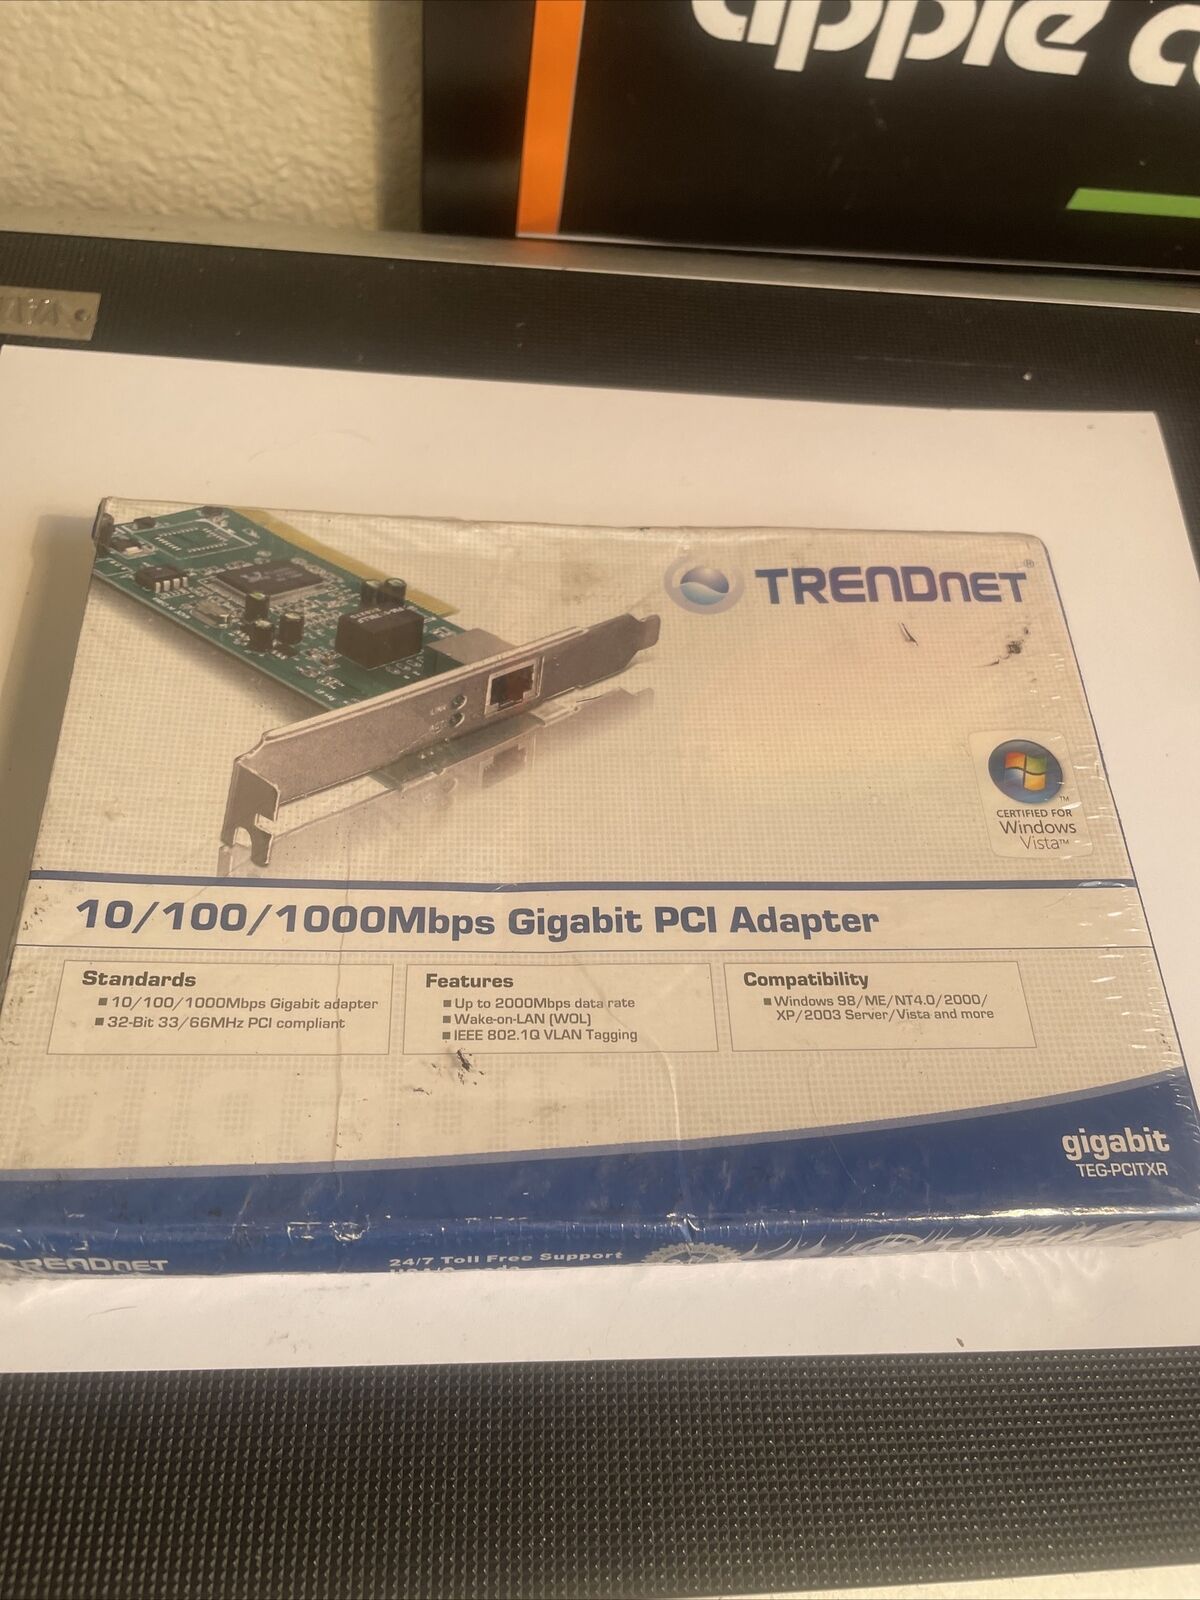 New TRENDnet TEG-PCITXR Gigabit PCI Adapter